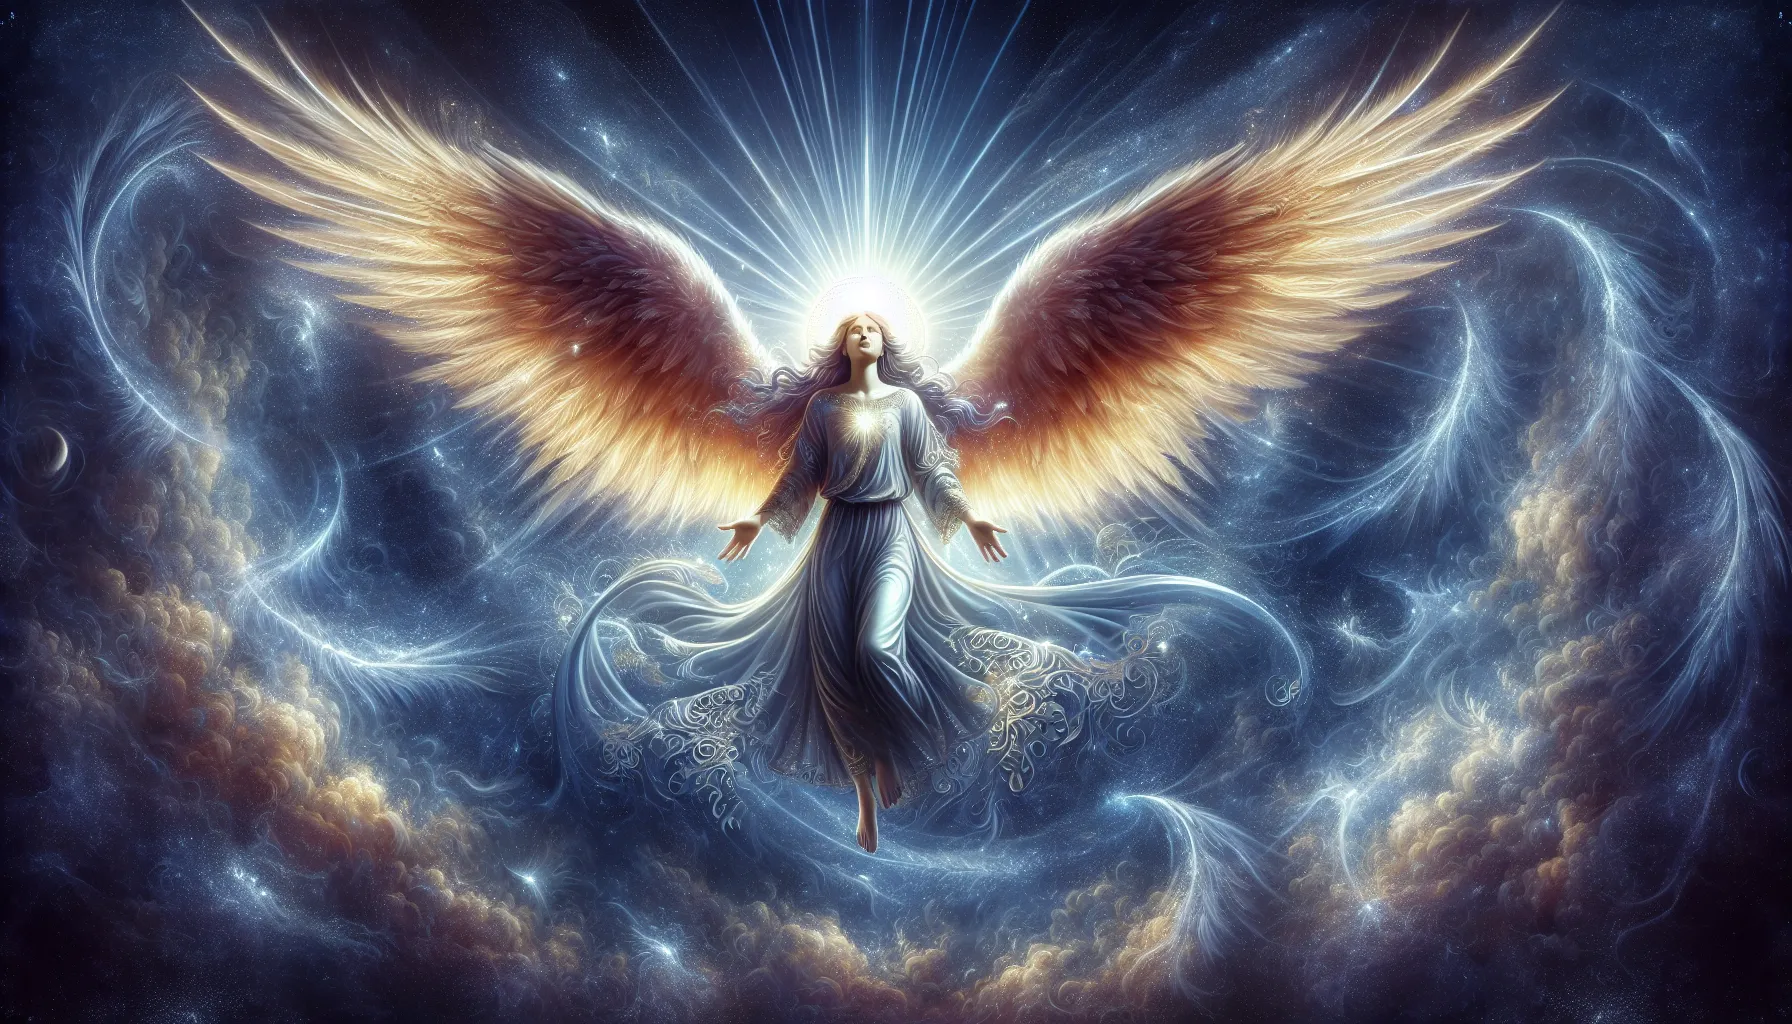 Representación artística de un ángel celestial con alas extendidas